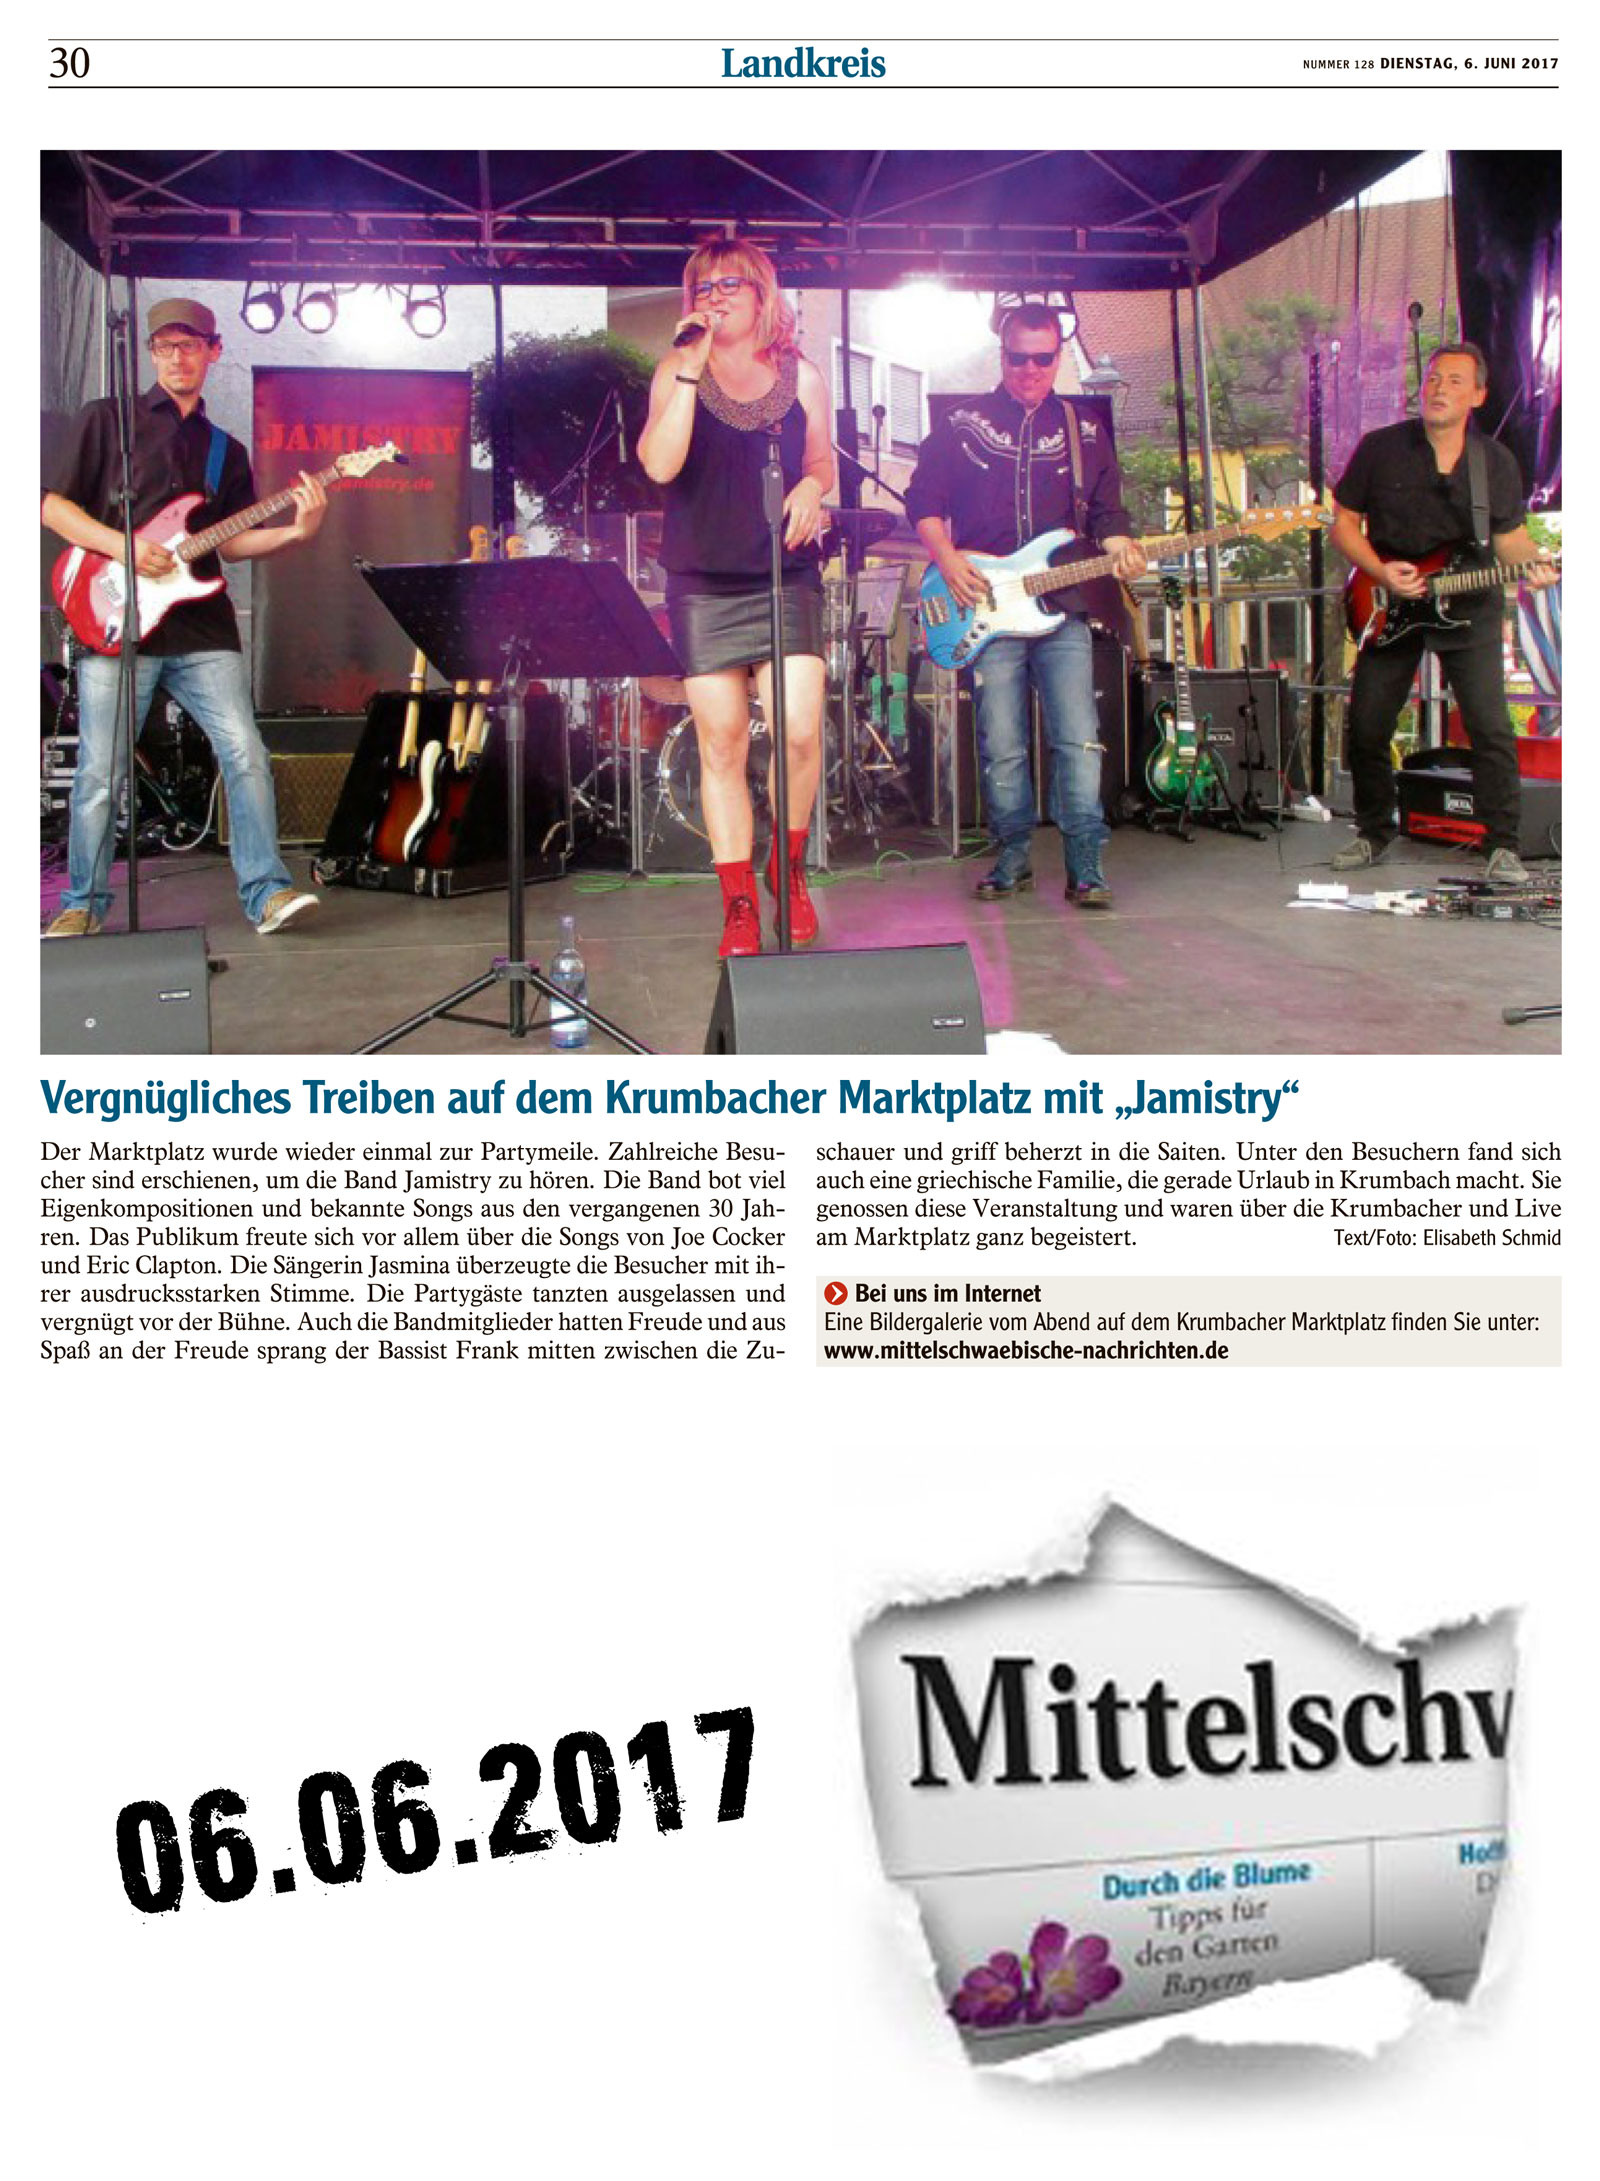 Jamistry bei live am Marktplatz 2017 06 03 Mittelschwaebische Nachrichten